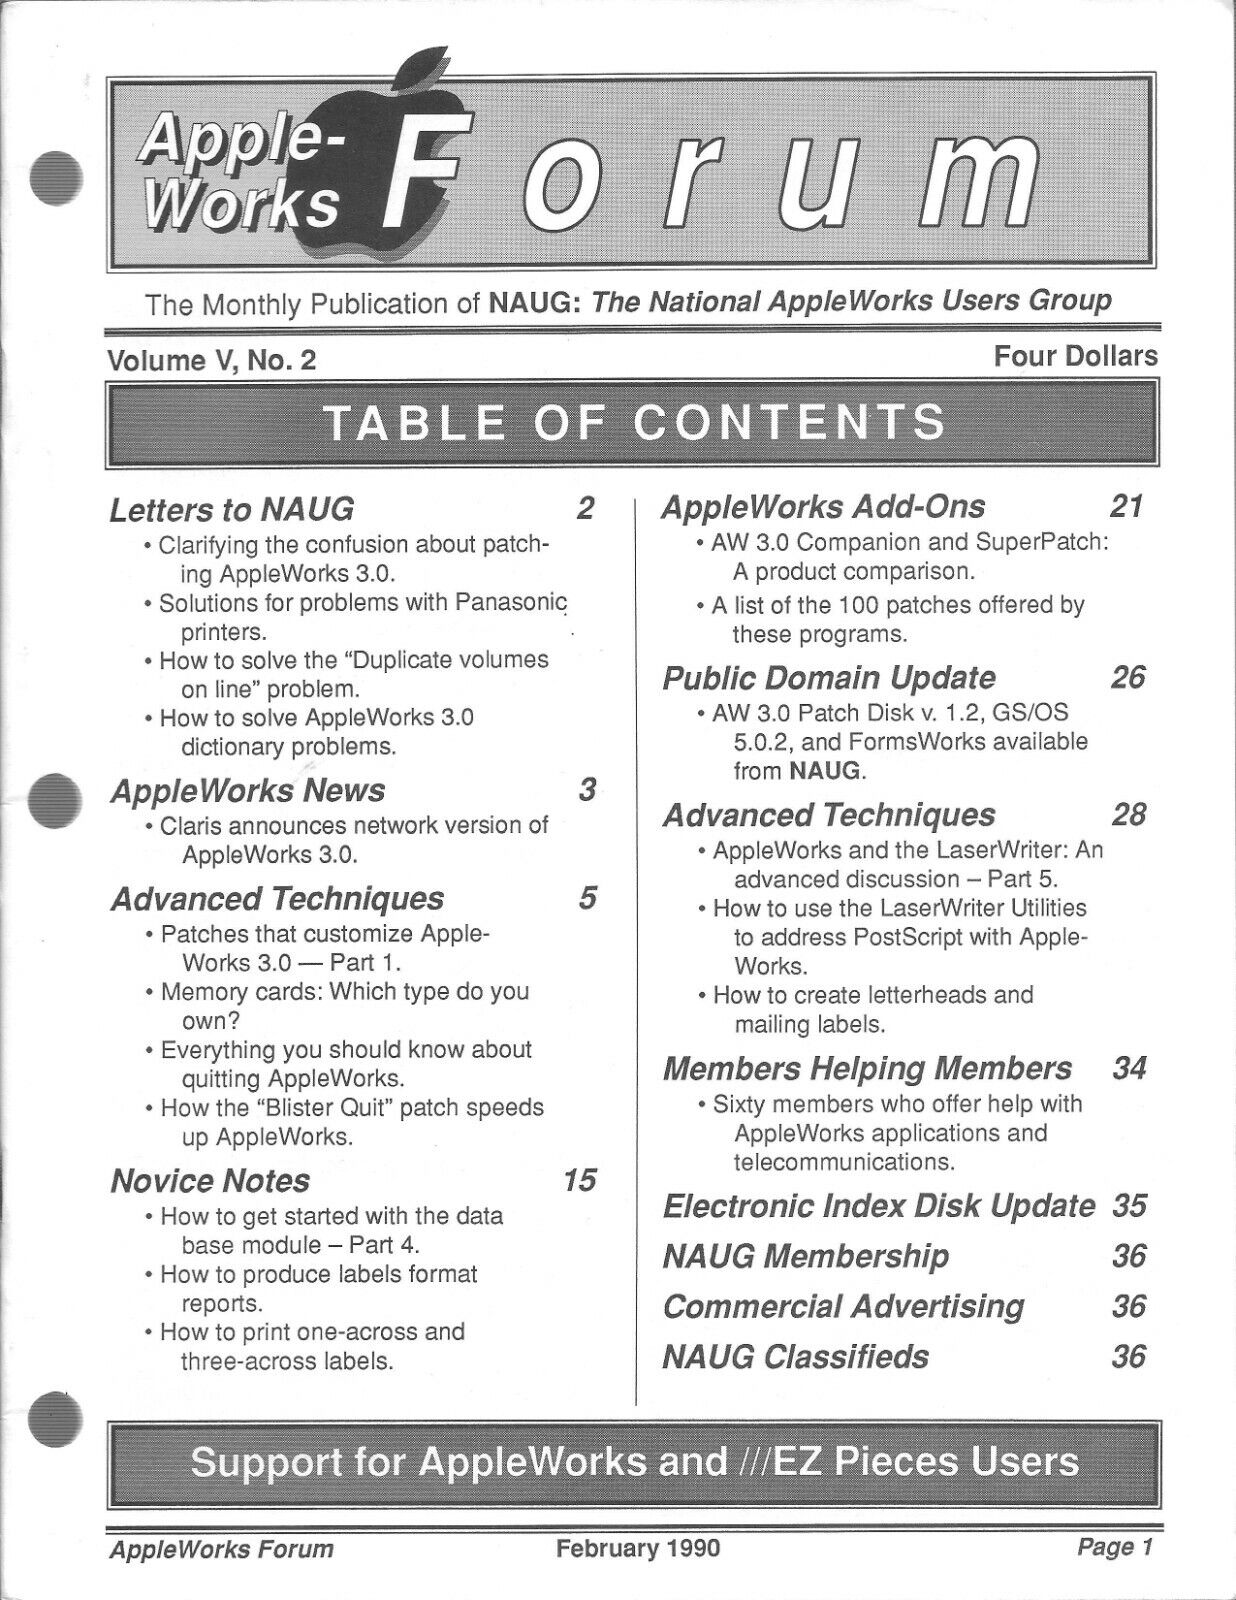 AppleWorks Forum Magazine, February 1990 for Apple II II+ IIe IIc IIgs